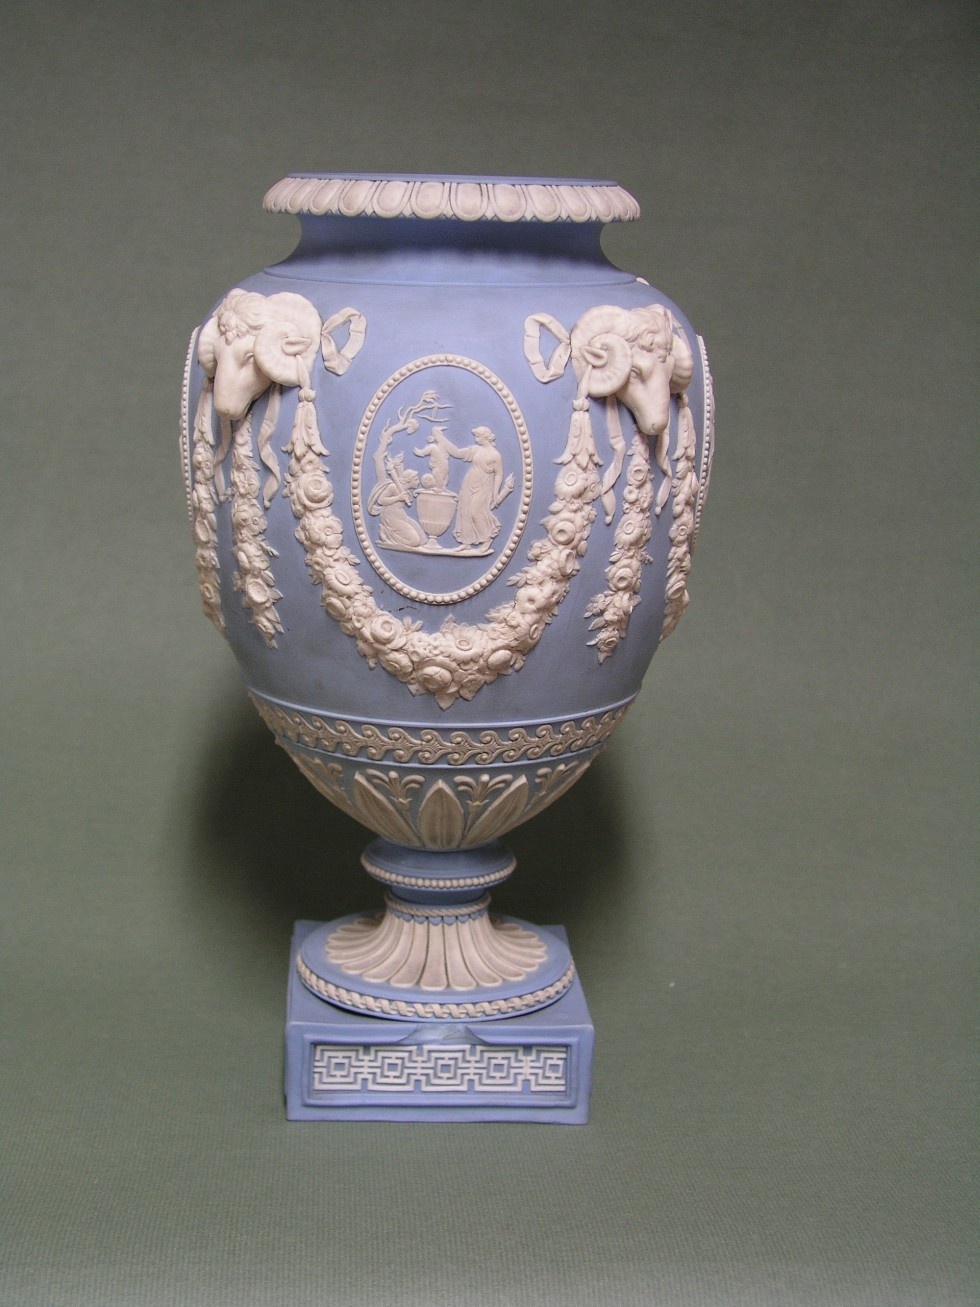 Blaue Vase mit weissen Reliefornamenten (Kulturstiftung Sachsen-Anhalt RR-F)